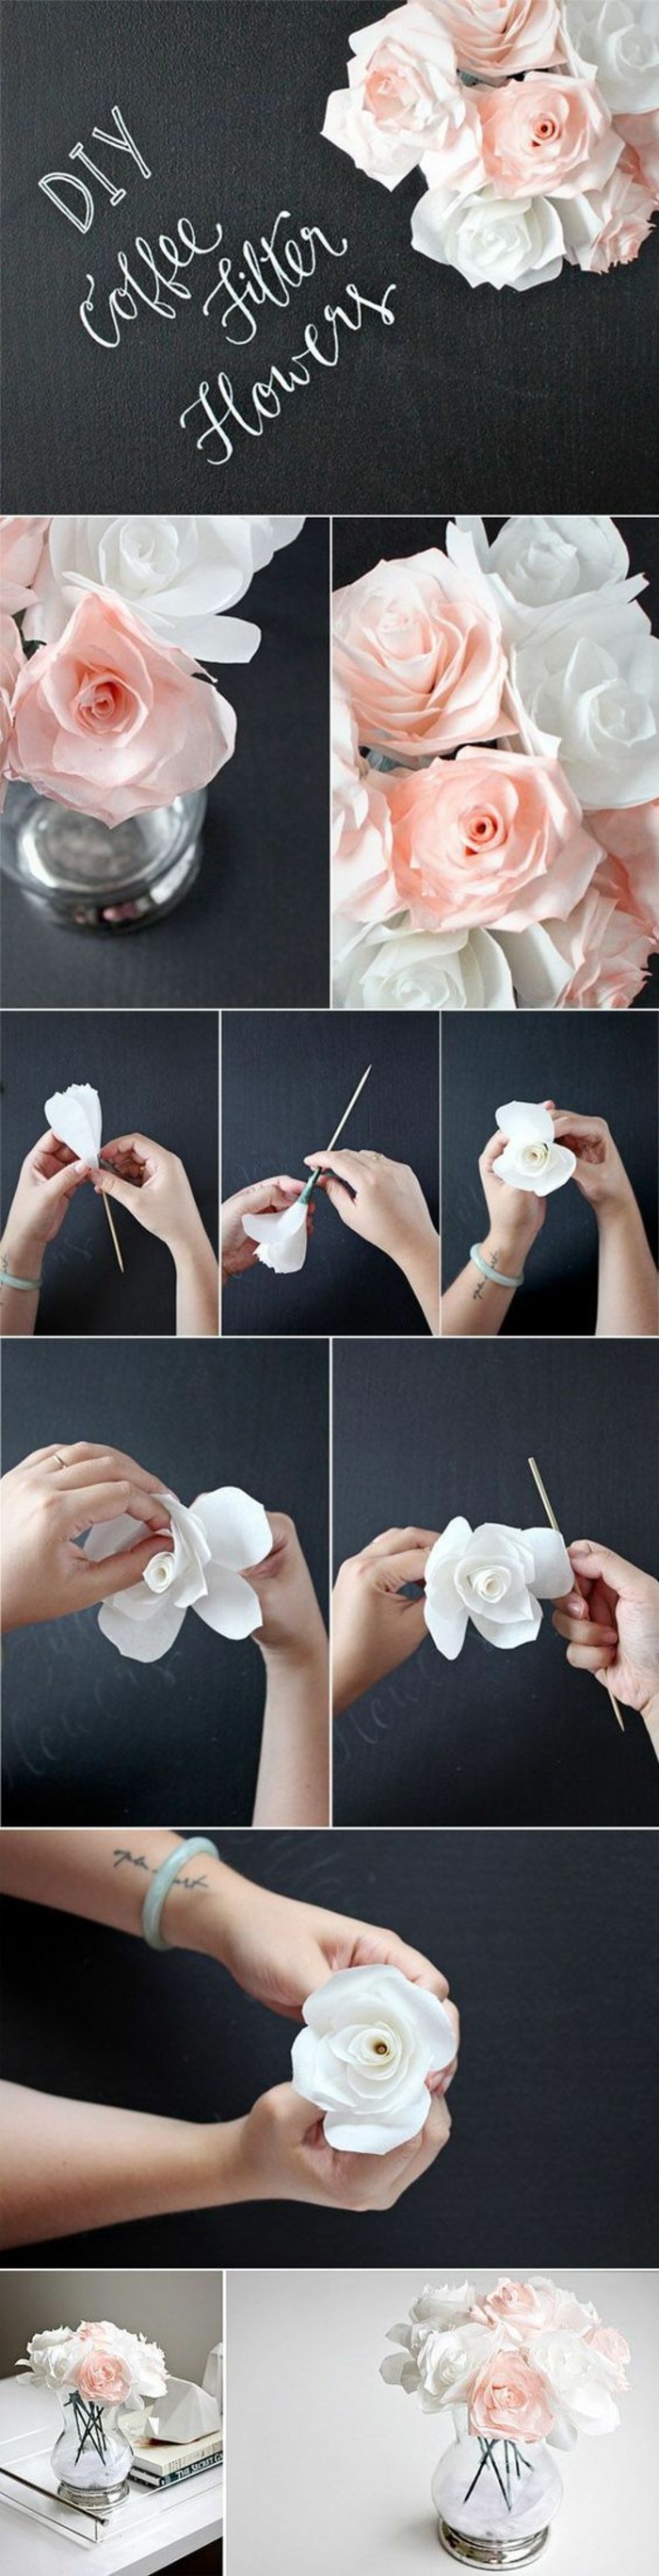 glasvase, rosen aus papier, papierblumen selber machen